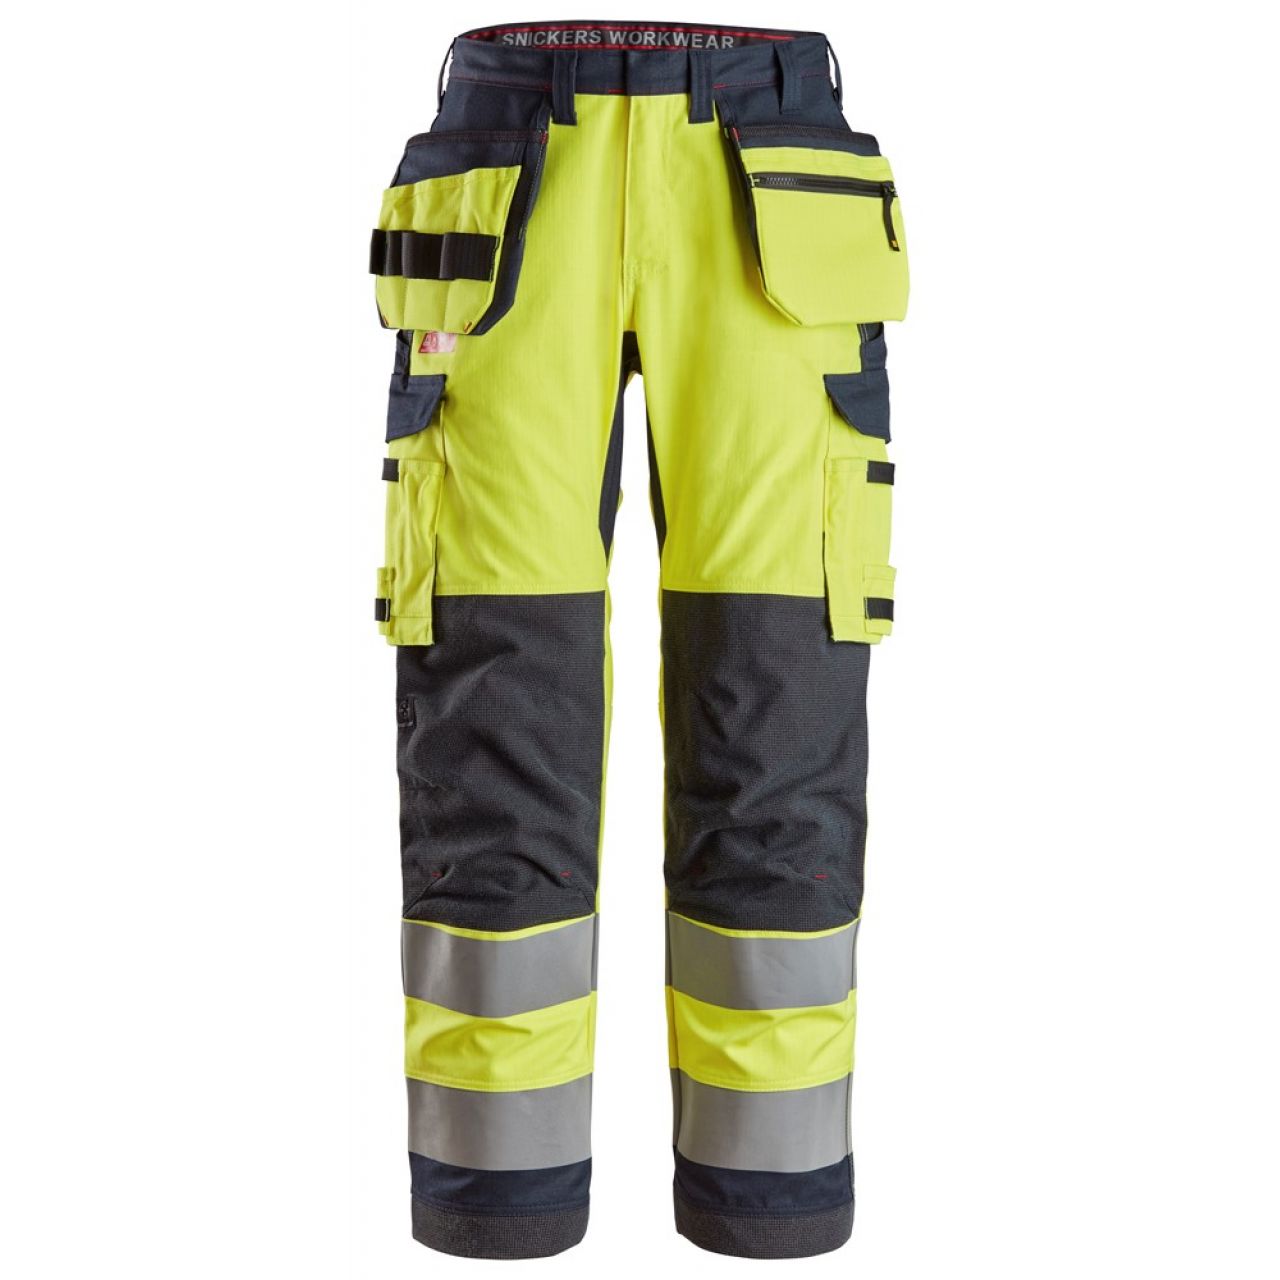 6261 Pantalones largos de trabajo de alta visibilidad clase 2 con bolsillos flotantes simétricos ProtecWork amarillo-azul marino talla 124